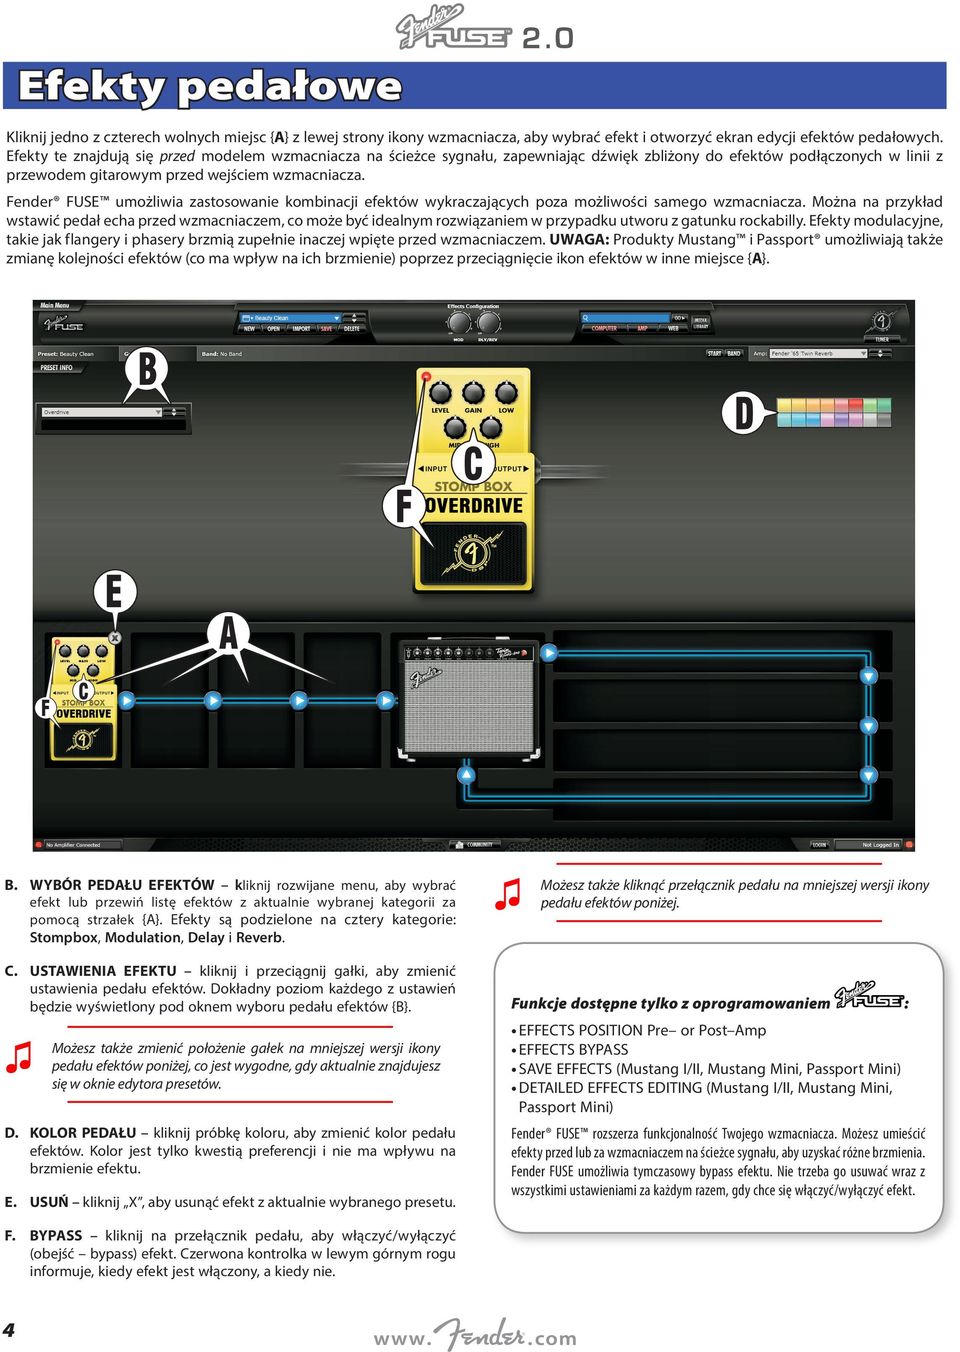 Fender FUSE umożliwia zastosowanie kombinacji efektów wykraczających poza możliwości samego wzmacniacza.